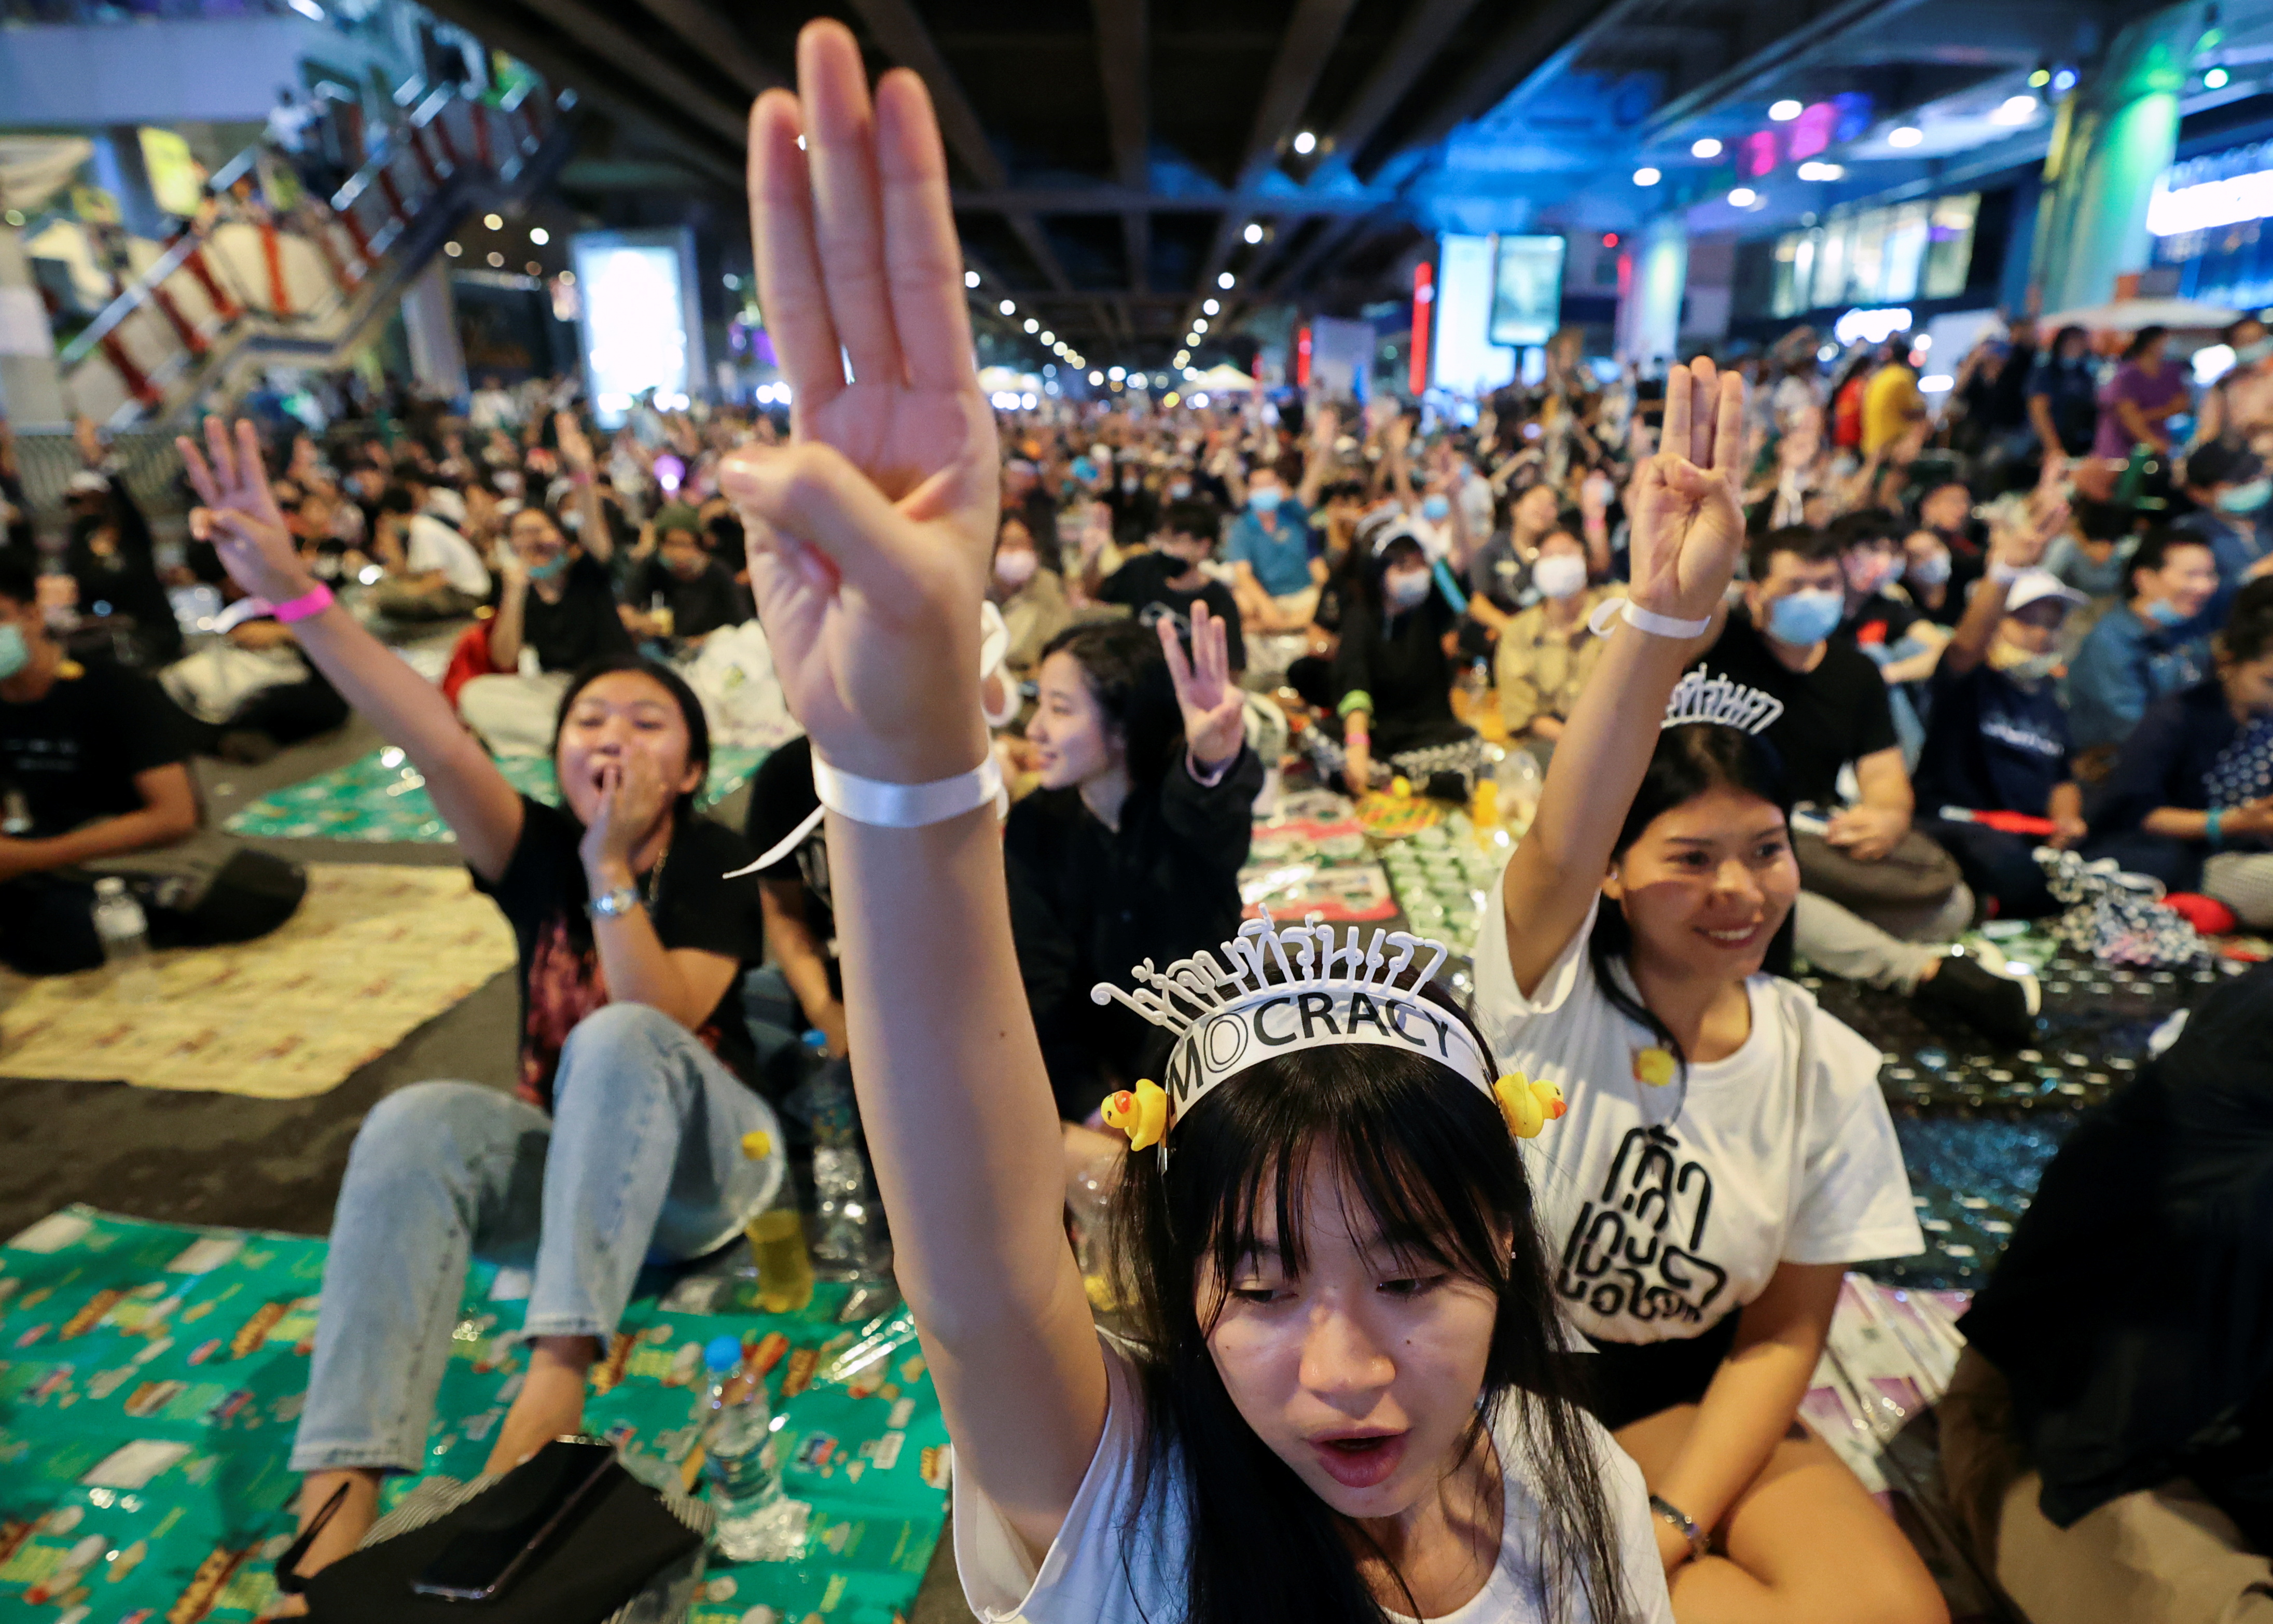 Los manifestantes a favor de la democracia muestran el saludo de tres dedos durante una manifestación a favor de la democracia que exige la renuncia del primer ministro de Tailandia, Prayut Chan-o-cha, y reformas a la monarquía en Bangkok, Tailandia, el 21 de noviembre de 2020. (REUTERS / Chalinee Thirasupa)